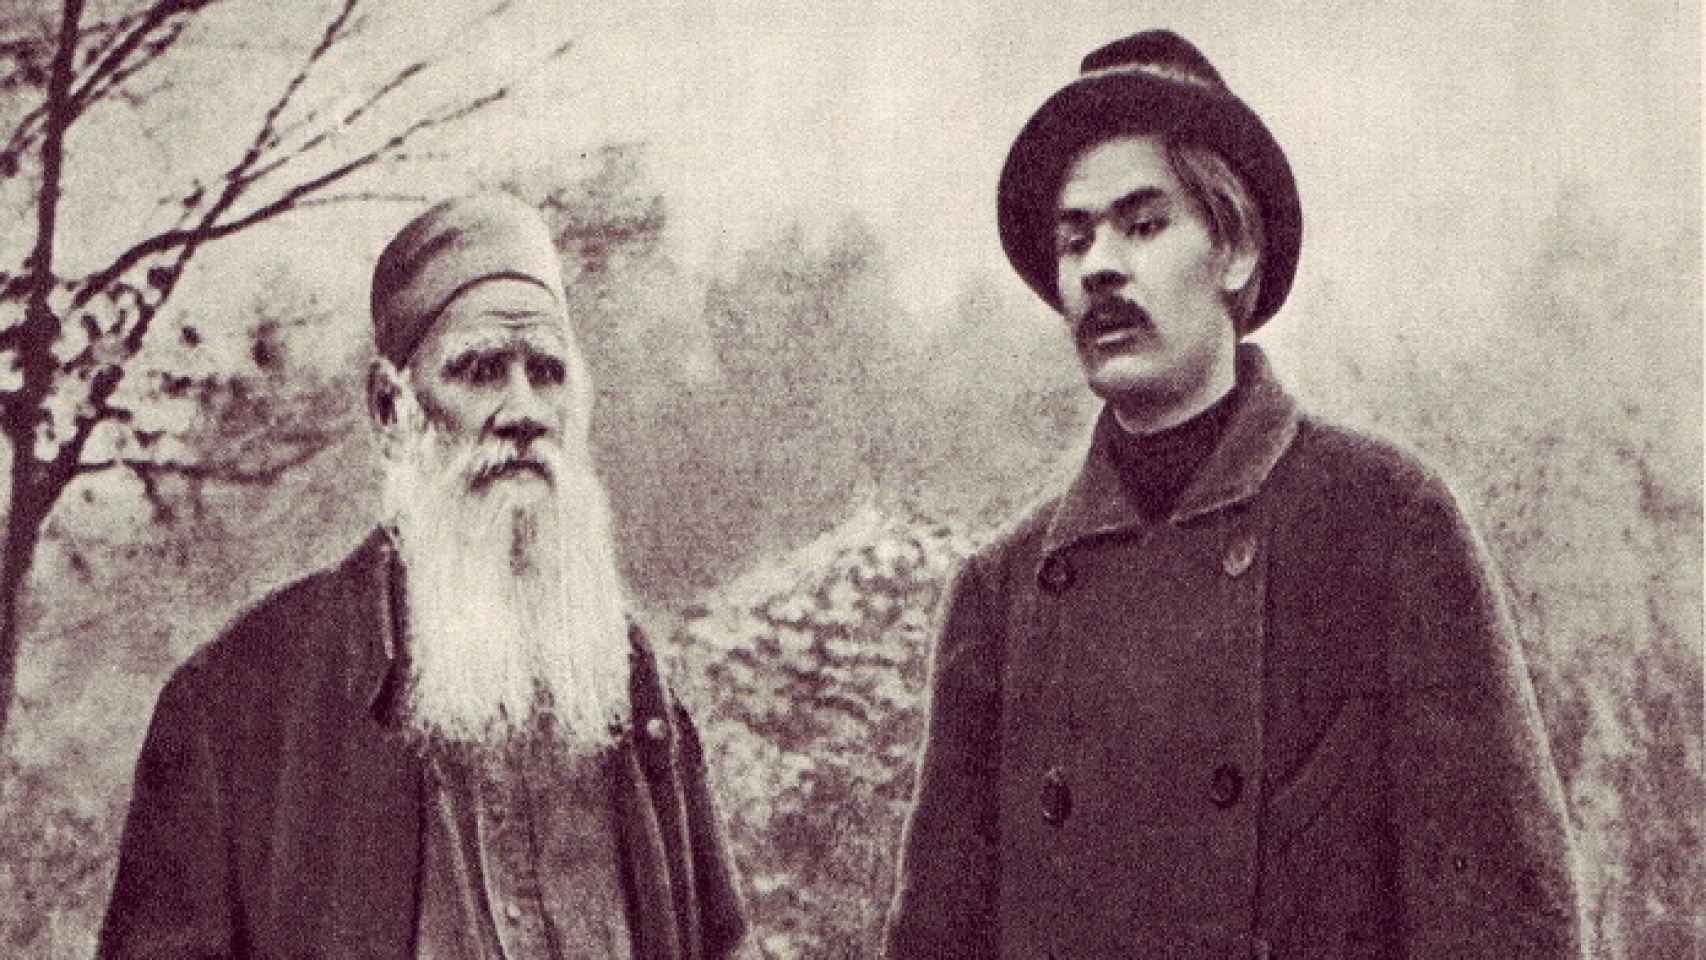 Tolstói y Gorki en Yásnaia Poliana en 1900